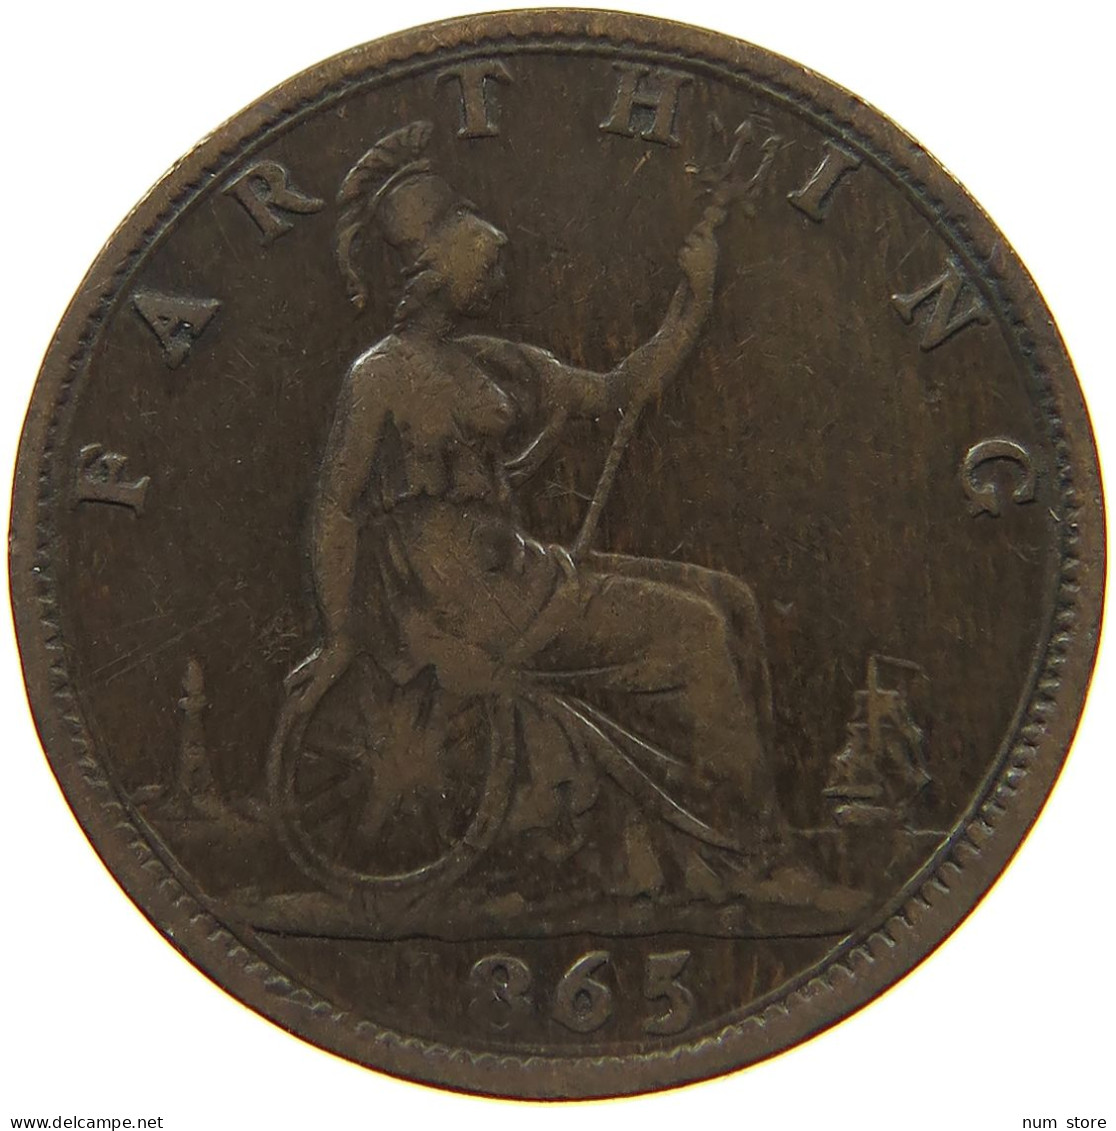 GREAT BRITAIN FARTHING 1865 Victoria 1837-1901 #c022 0241 - B. 1 Farthing